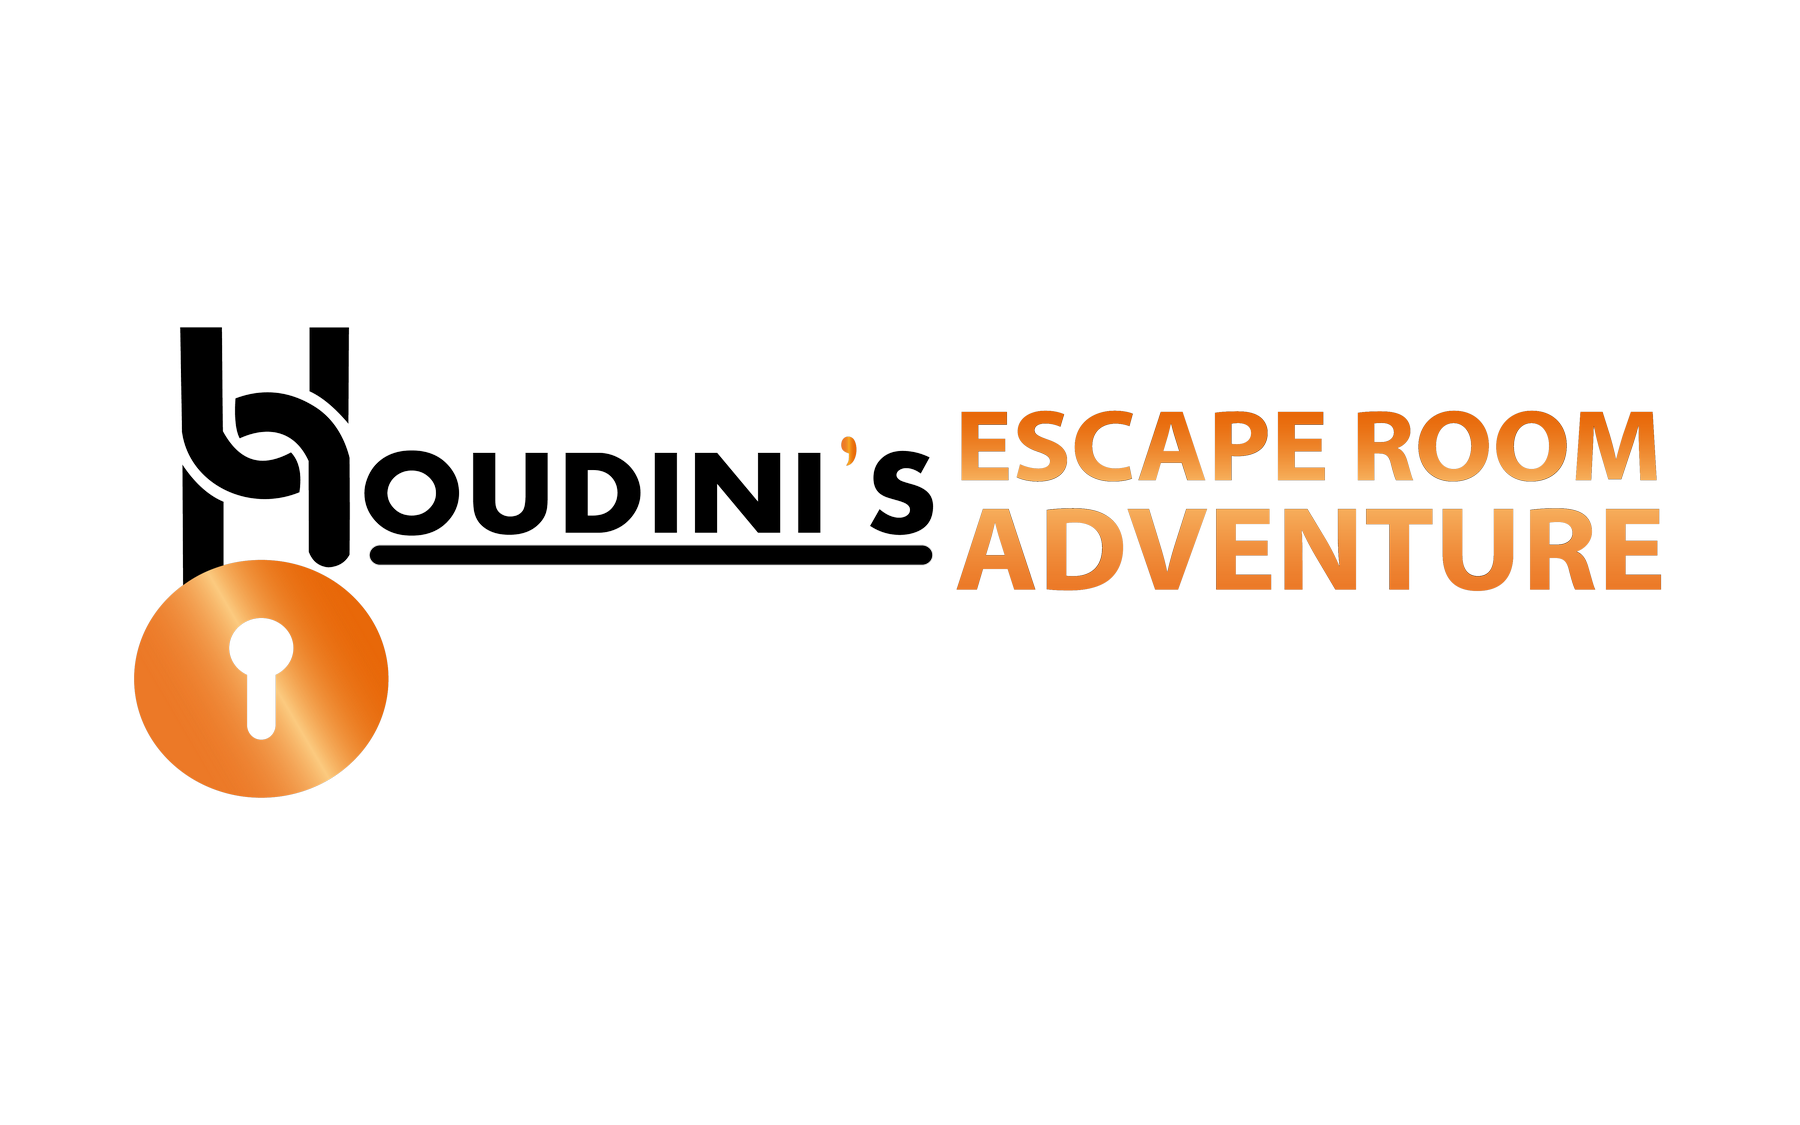 Houdinis Escape Room Adventure logo